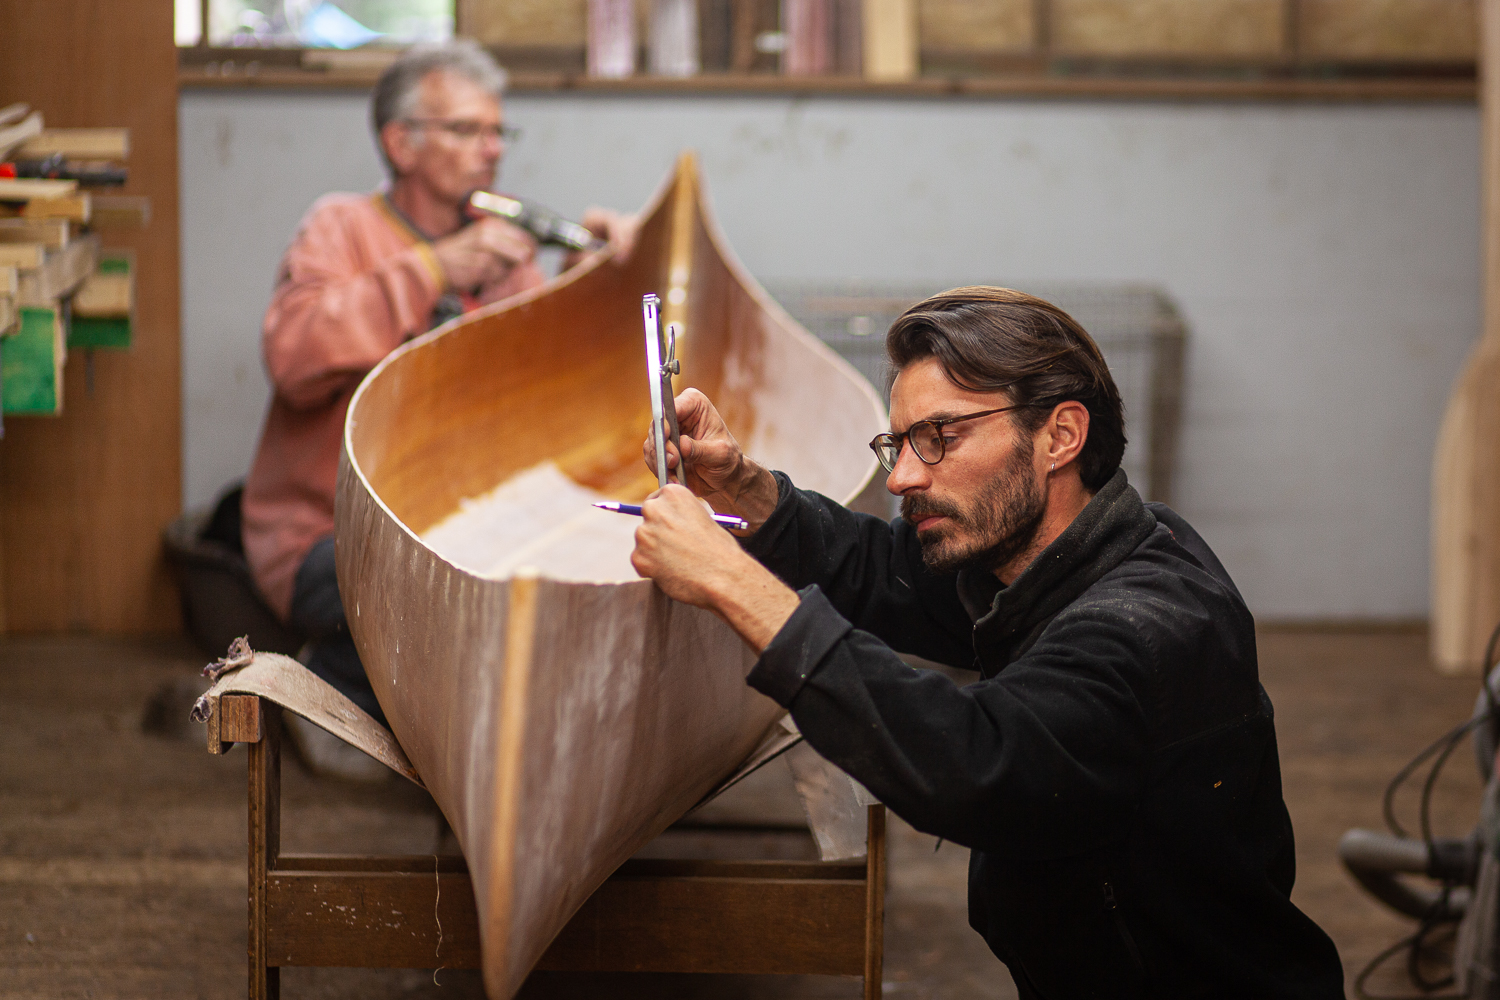 Workshop canoe building – Wood strip